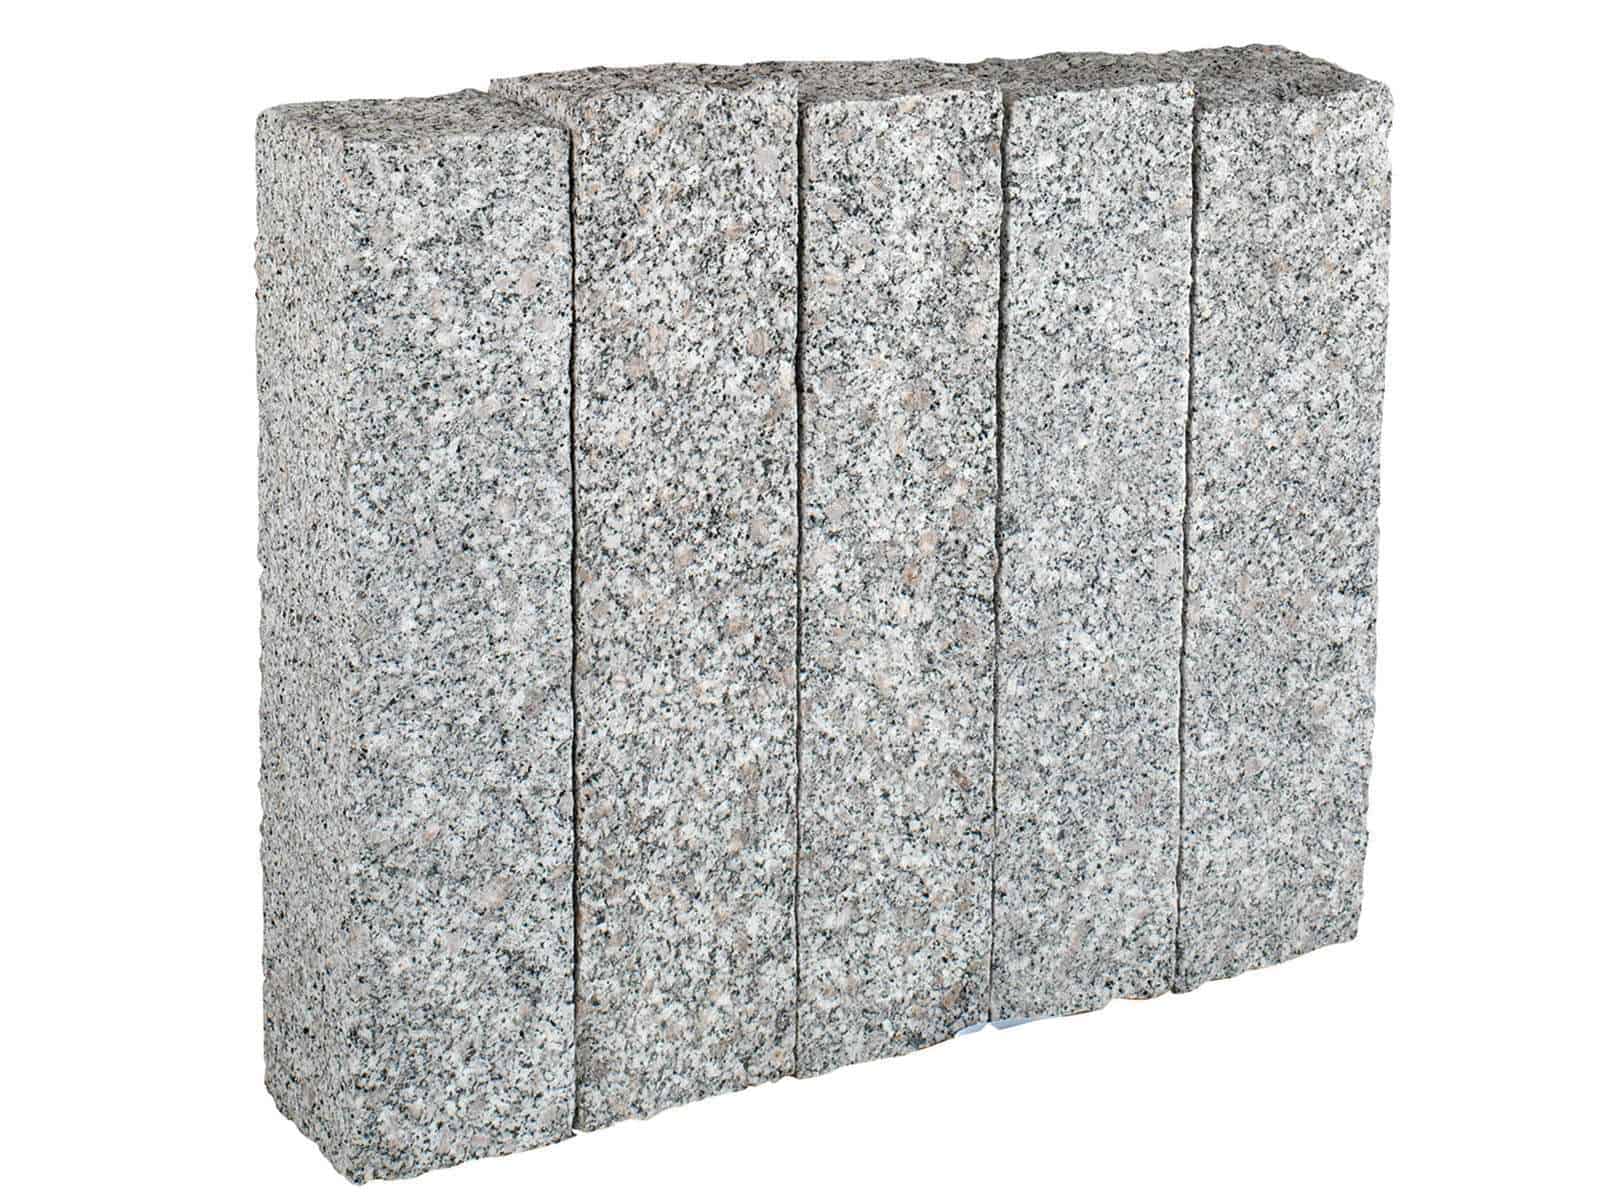 Palisade Granit Elegant grau aus Granit Kristall Elegant. Die fein gestockten/gespaltenen Granitpalisaden sind sehr präzise und Maﬂhaltig.